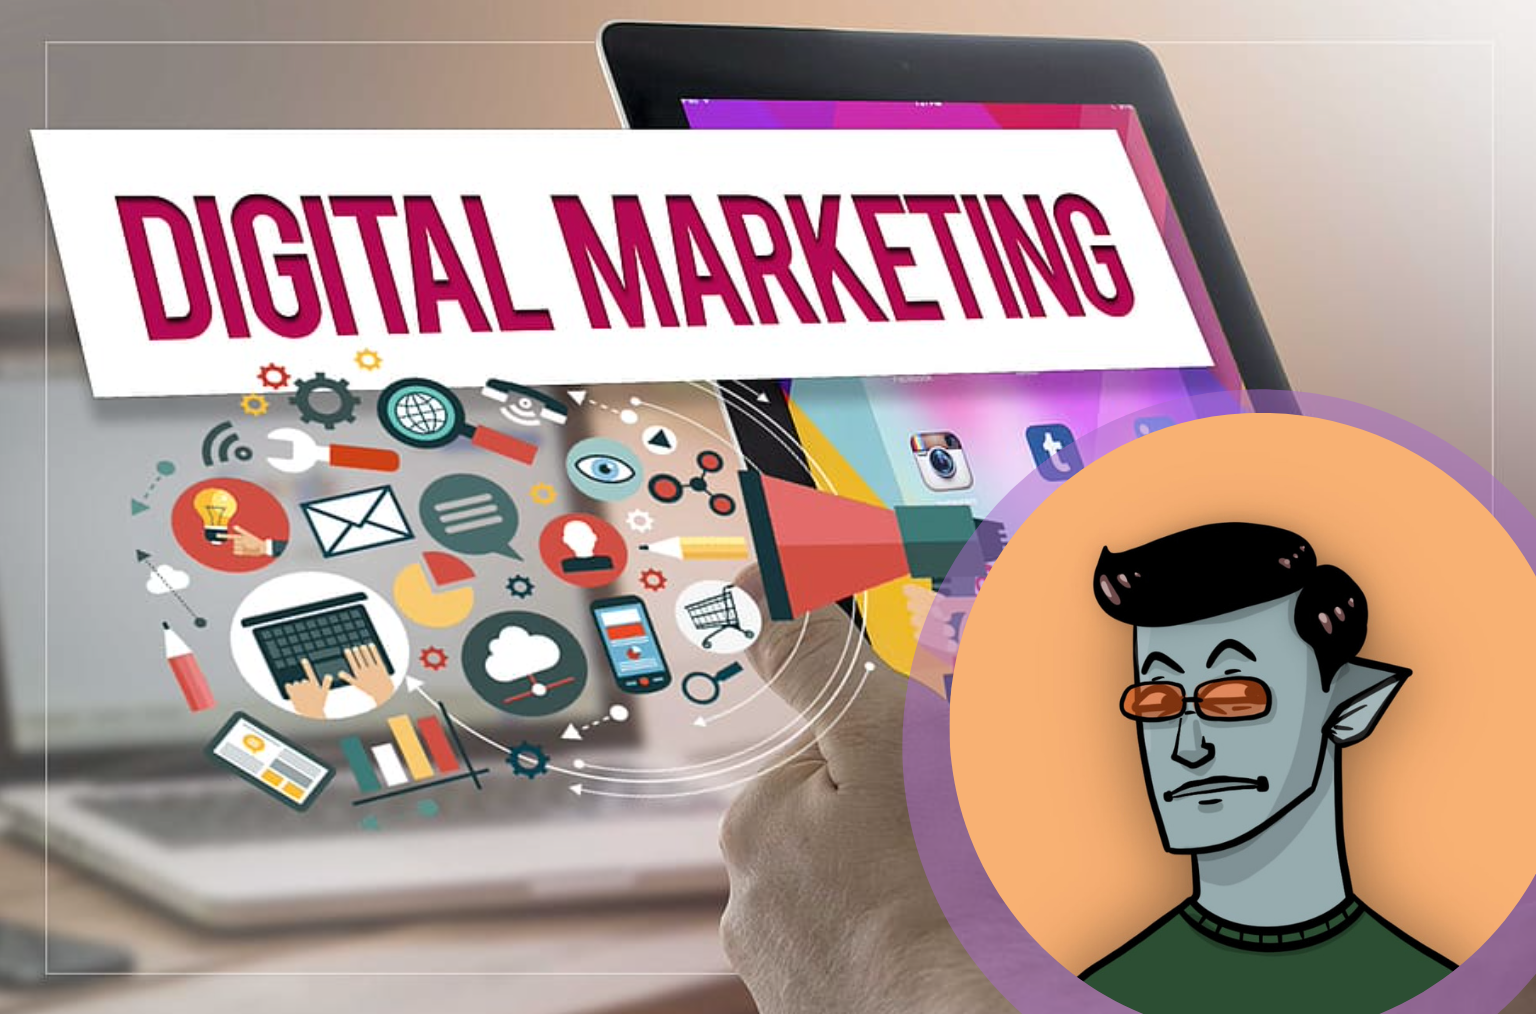 Jurgen Cautreels' Digital Marketing Skills